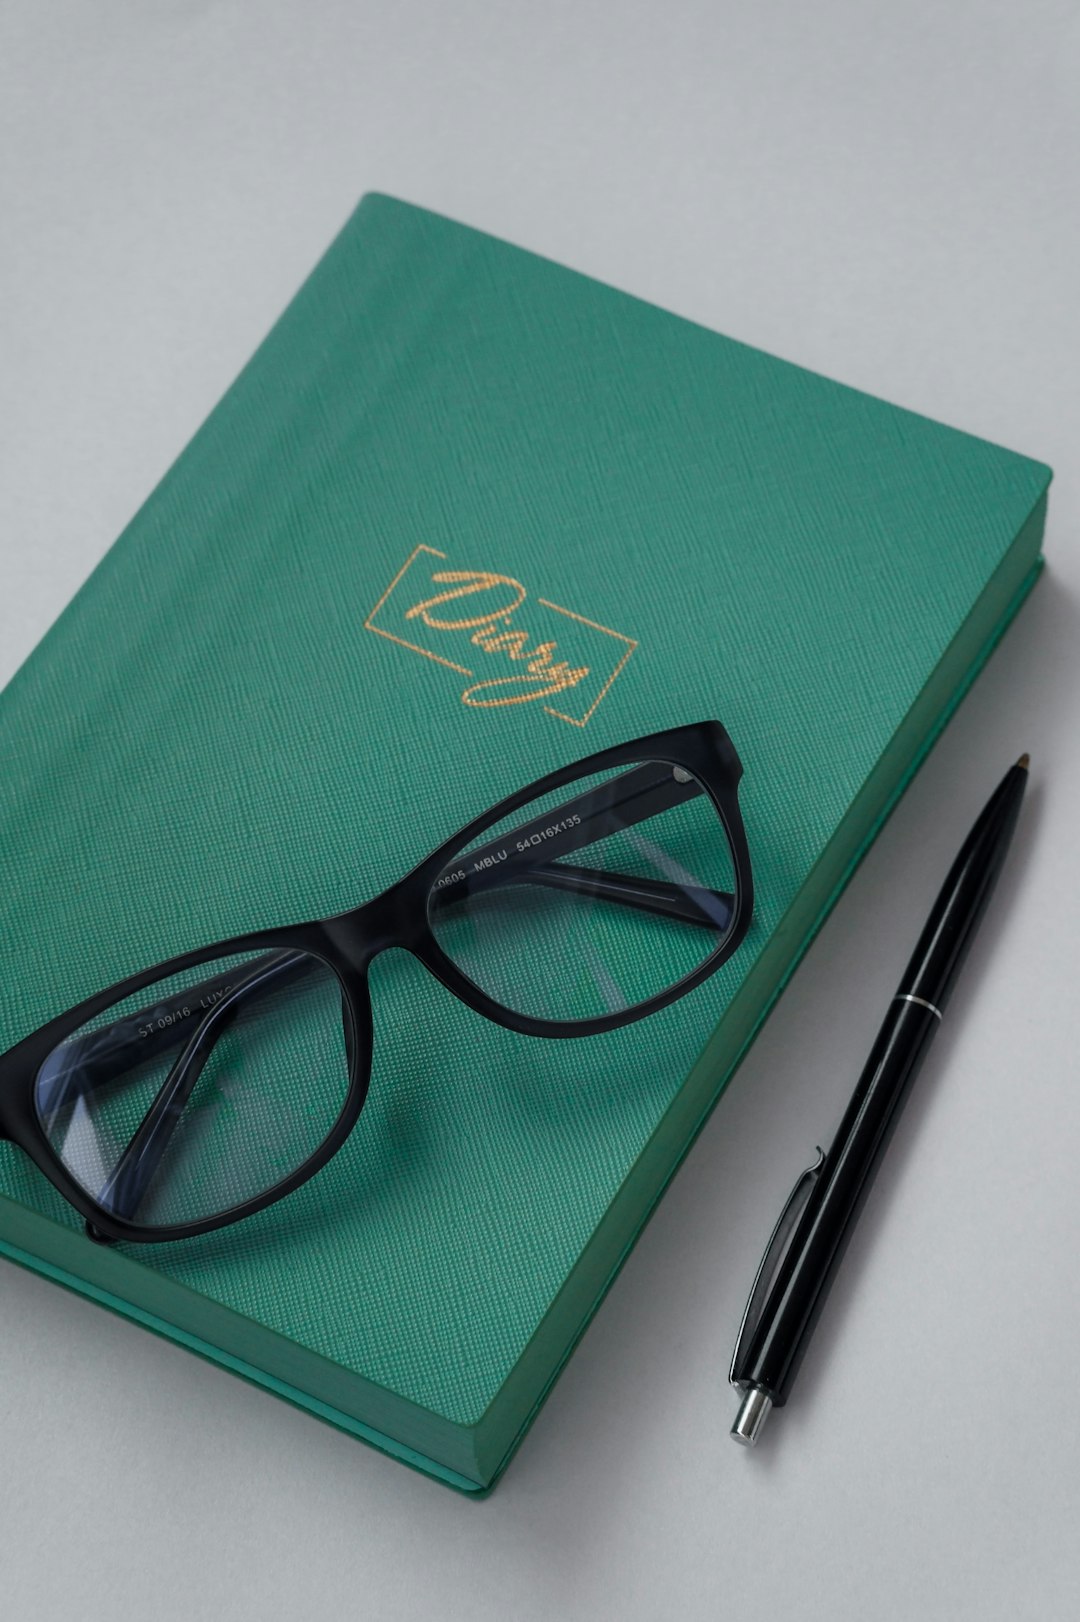 black frame eyeglasses on green book